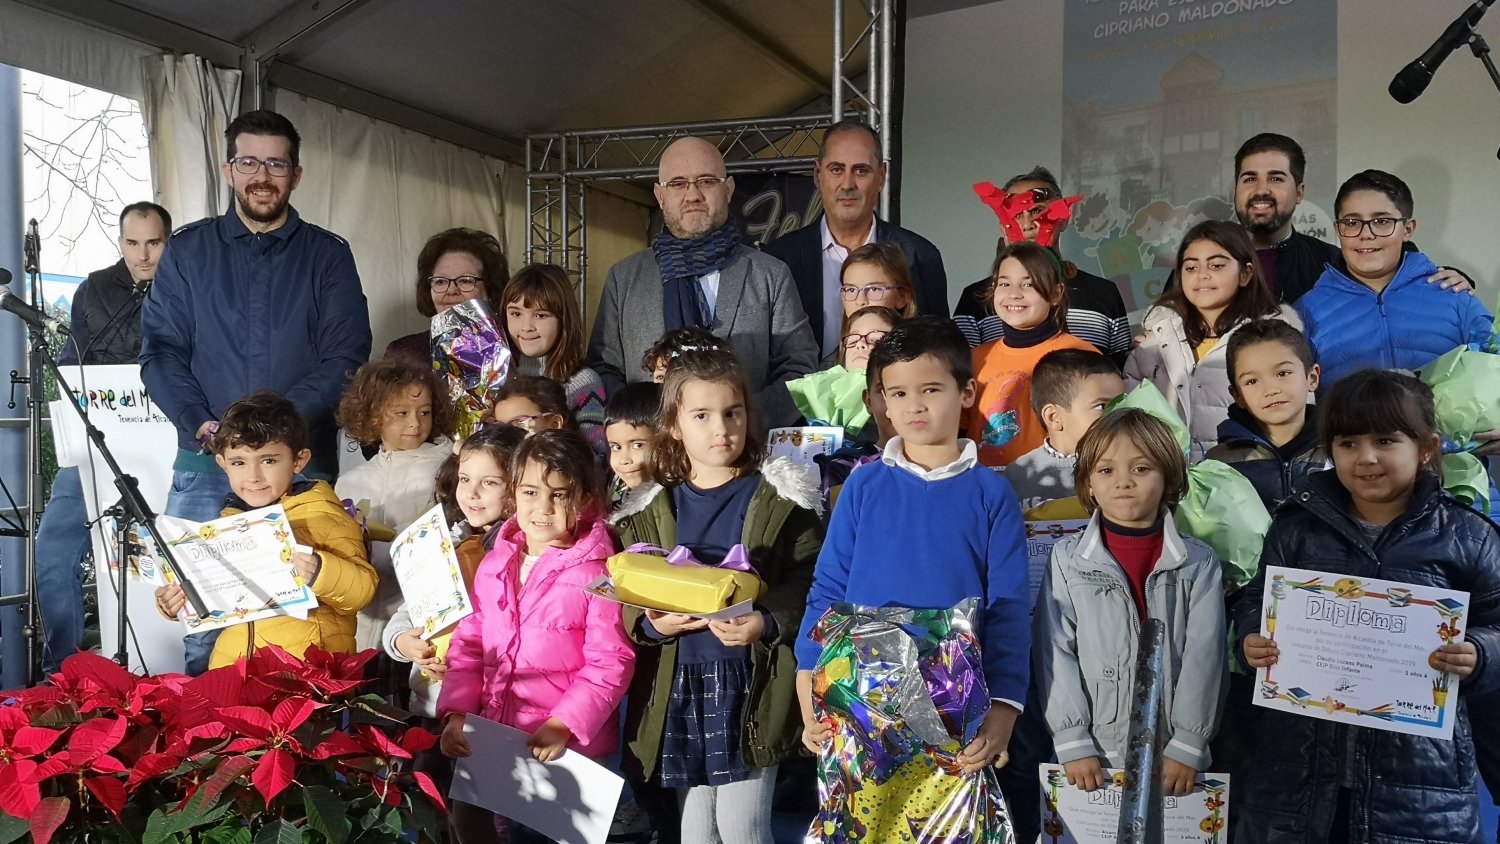 Torre del Mar entrega los premios del Certamen de Pintura Escolar 'Cipriano Maldonado'